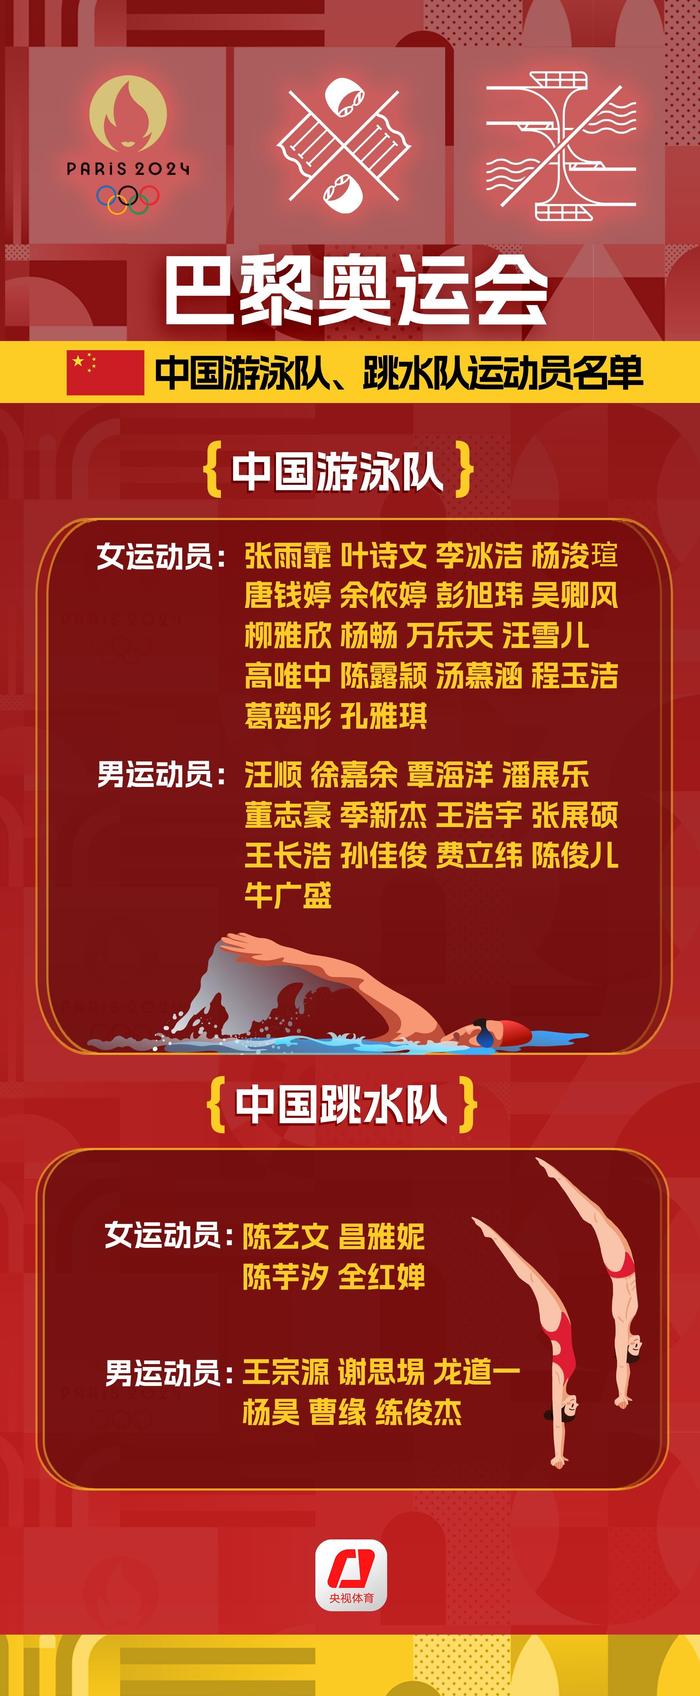 巴黎奥运：中国健儿出征名单预测 奥运会 健儿 公示名单 名单 国家队 选手 中国体育代表团 巴黎 sina.cn 第8张